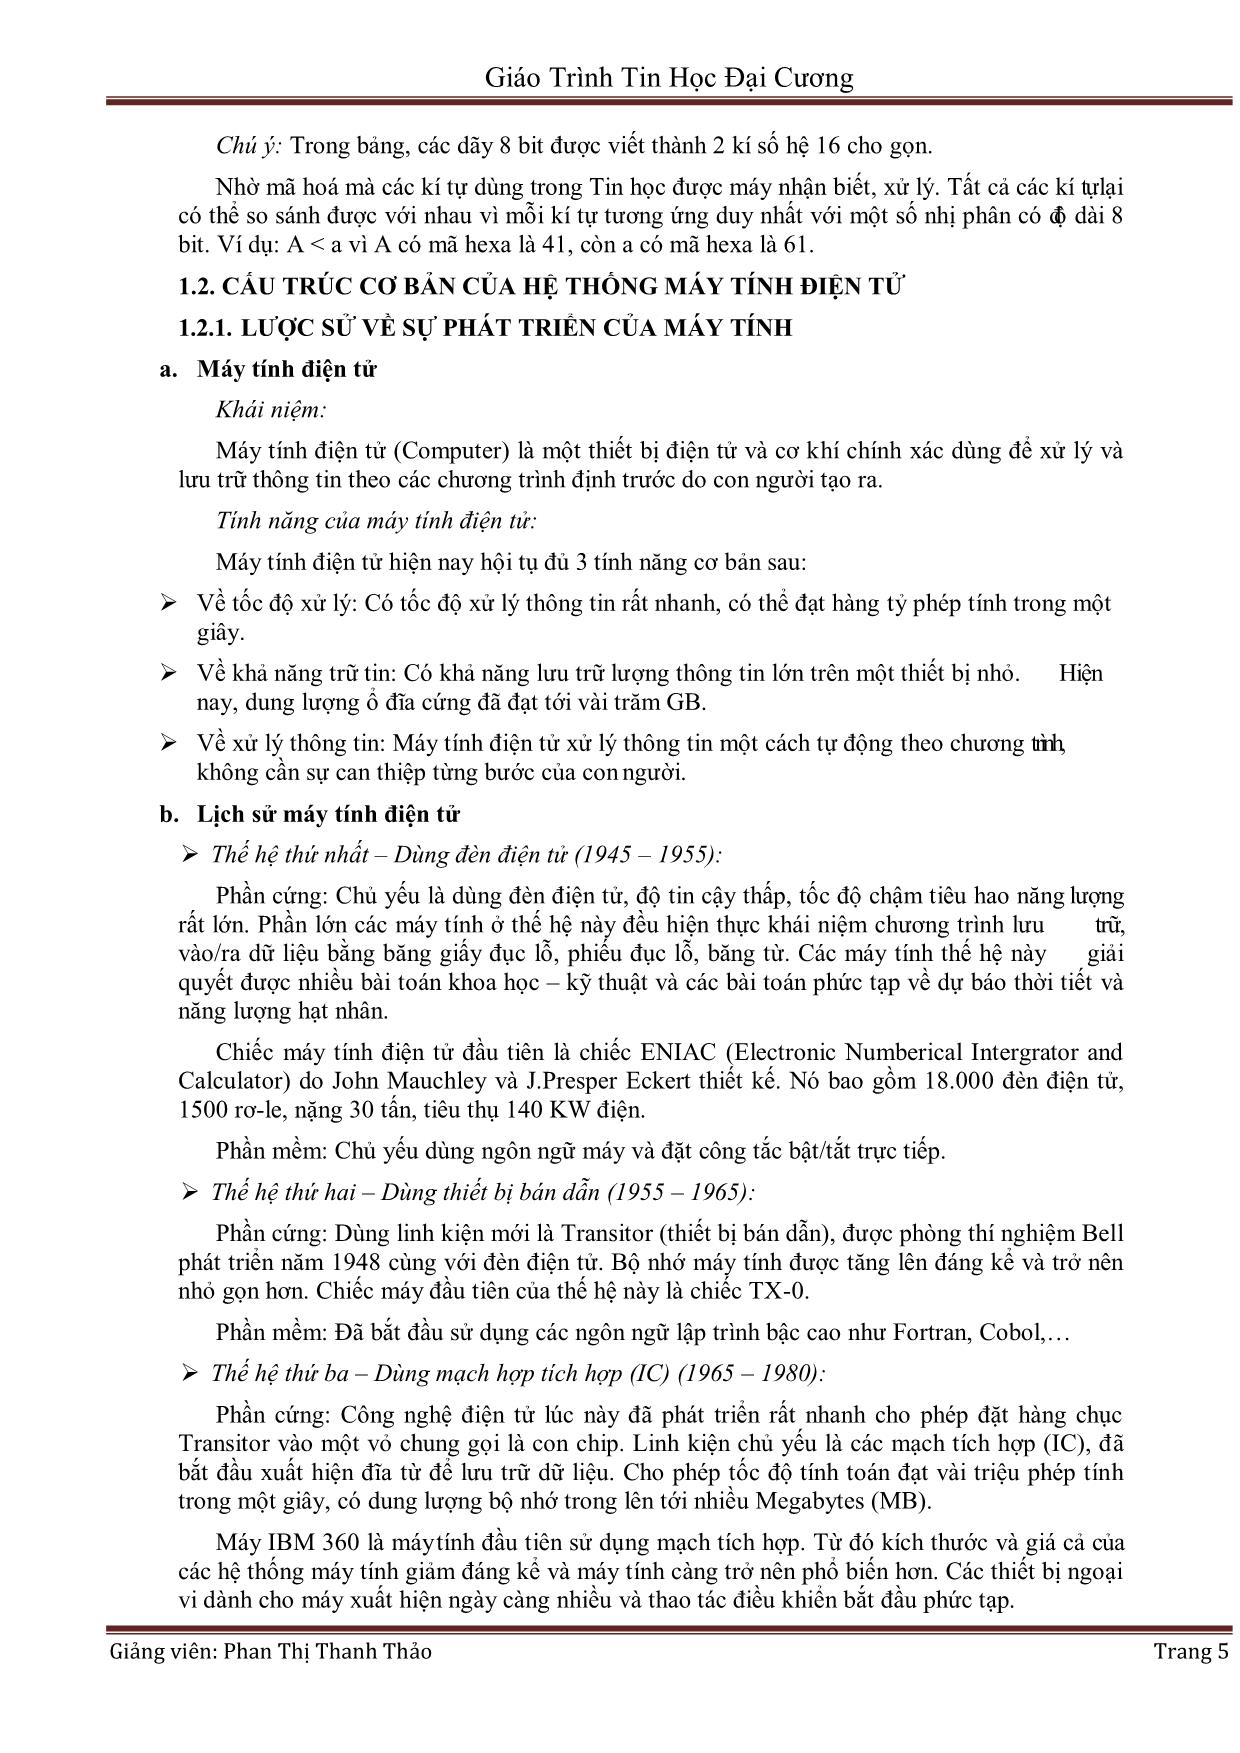 Giáo trình Tin học đại cương (Phần 1) - Phan Thị Thanh Thảo trang 5